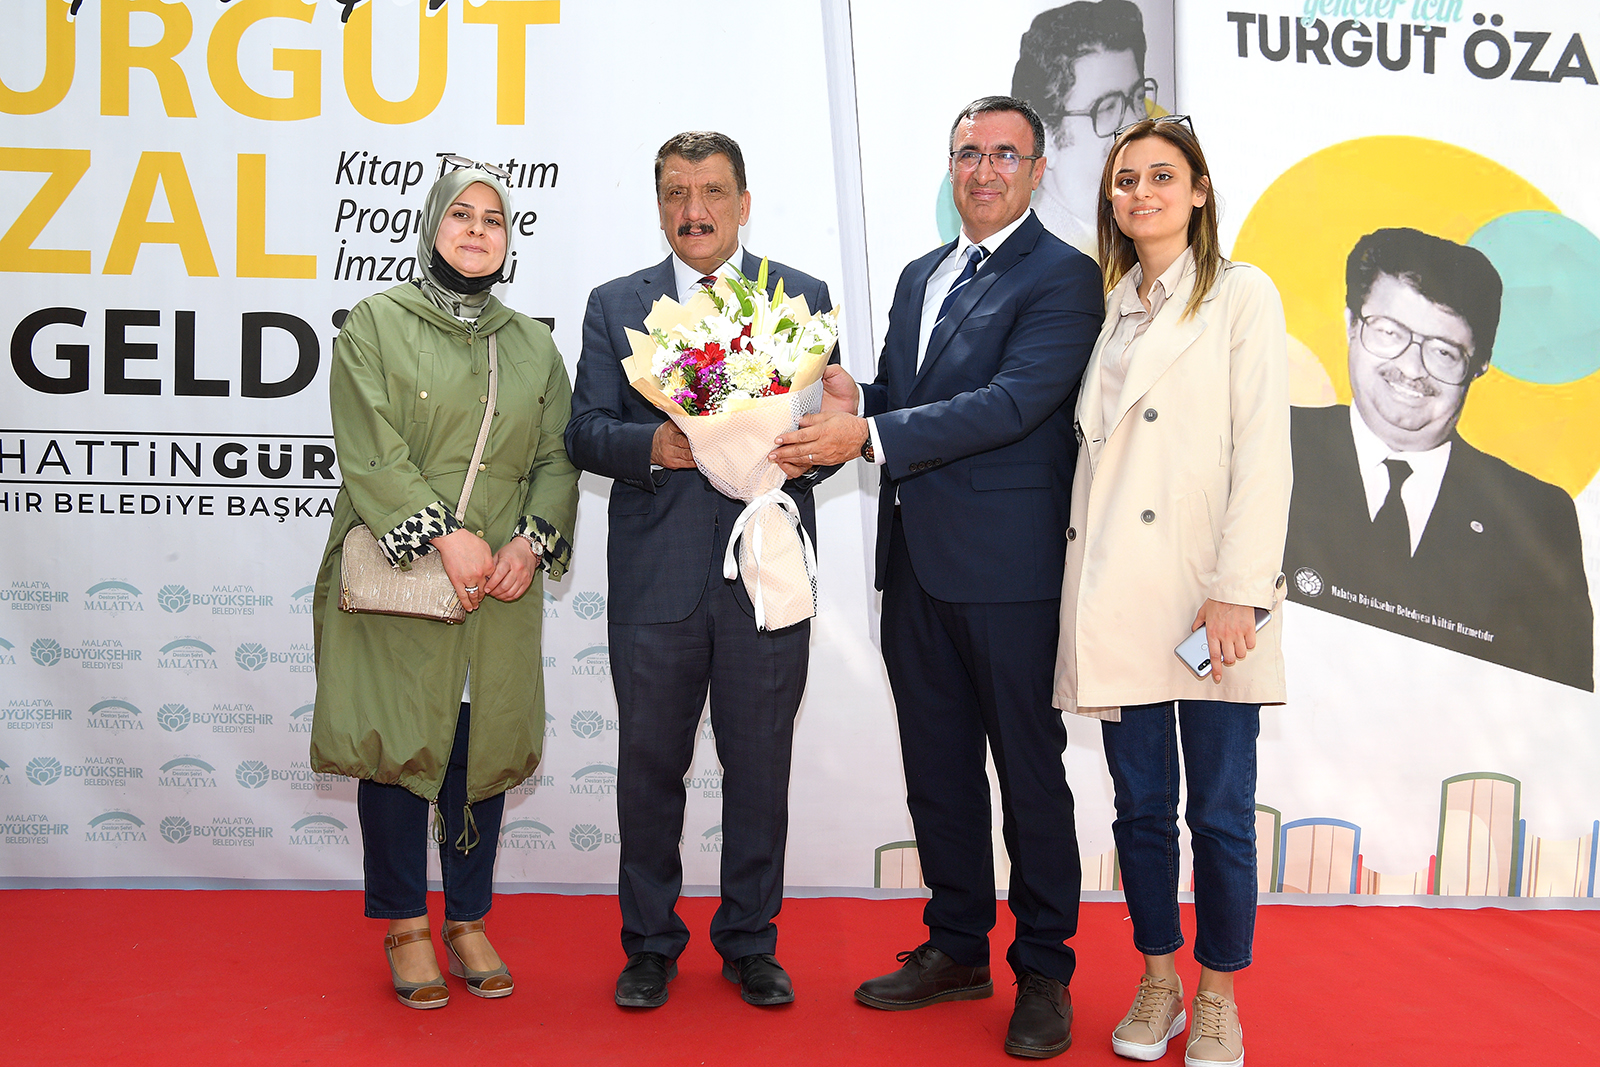 Malatya Büyükşehir Belediyesi Kültür ve Sosyal İşler Dairesi tarafından basımı gerçekleştirilen, Malatyalı Araştırmacı Yazar Nezir Kızılkaya’nın ‘Gençler için Turgut Özal’ kitabının tanıtımı ve imza töreni gerçekleştirildi.